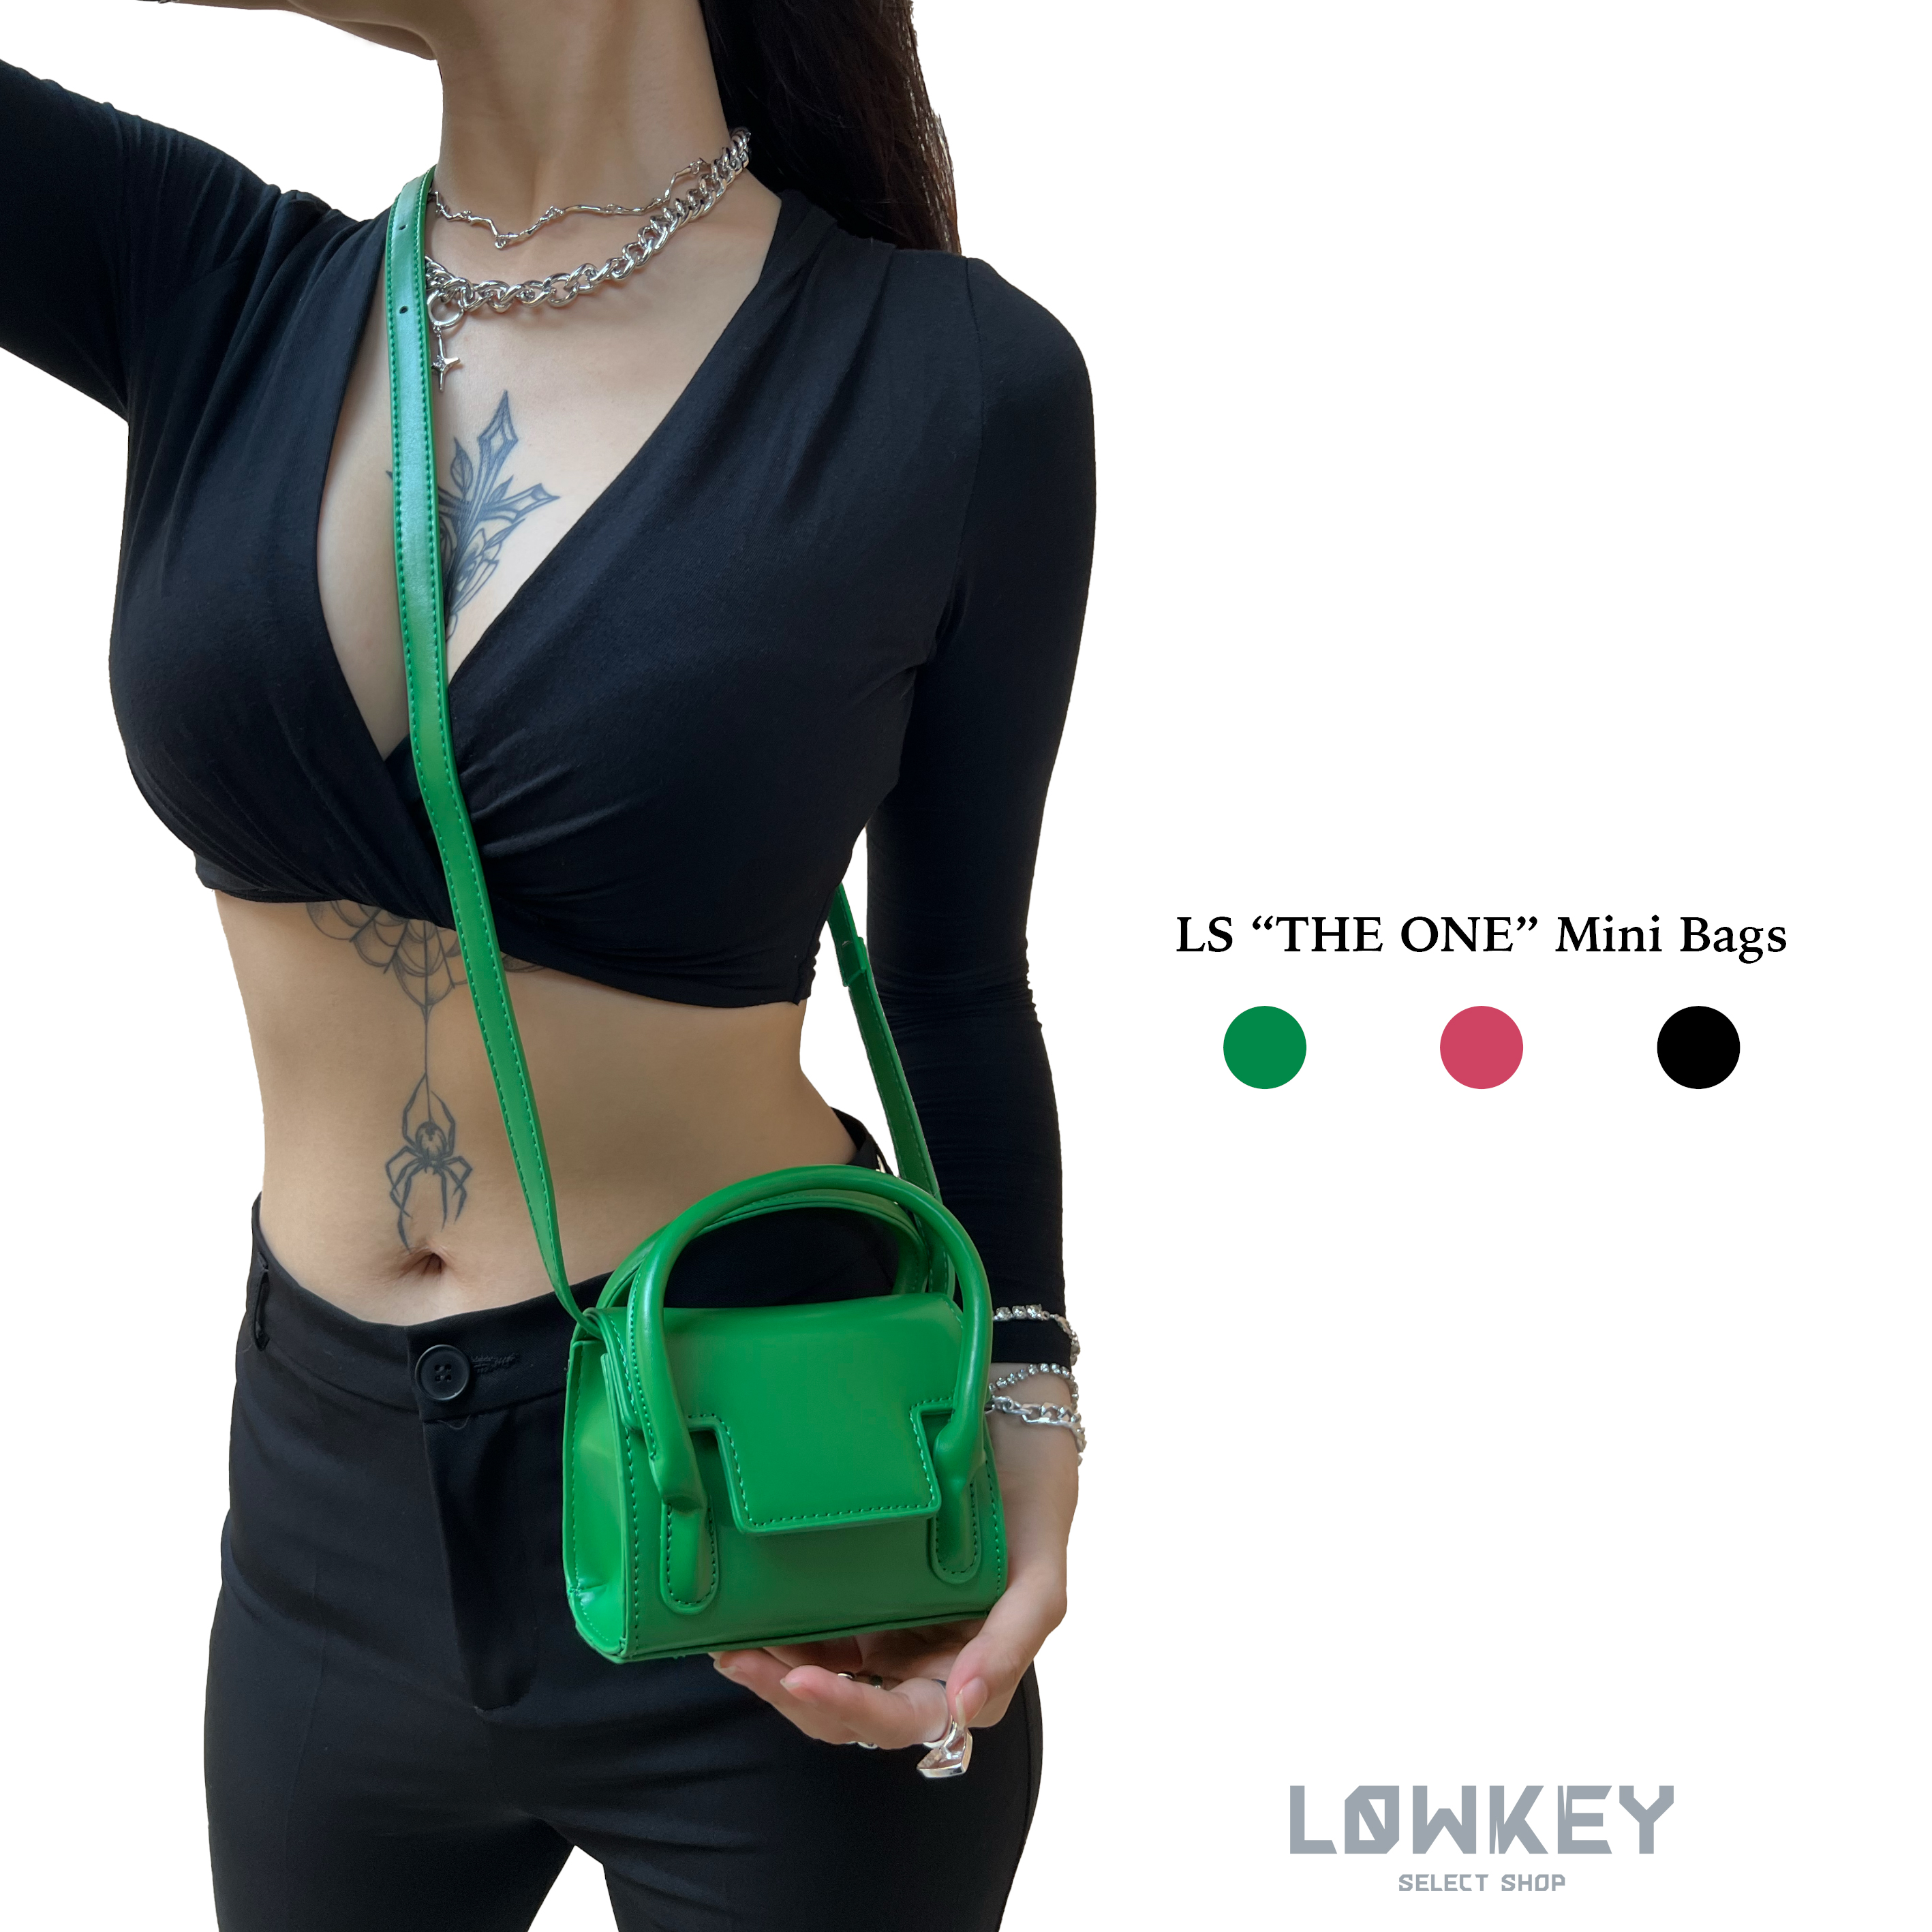 LS “THE ONE” Mini Bags2.jpg